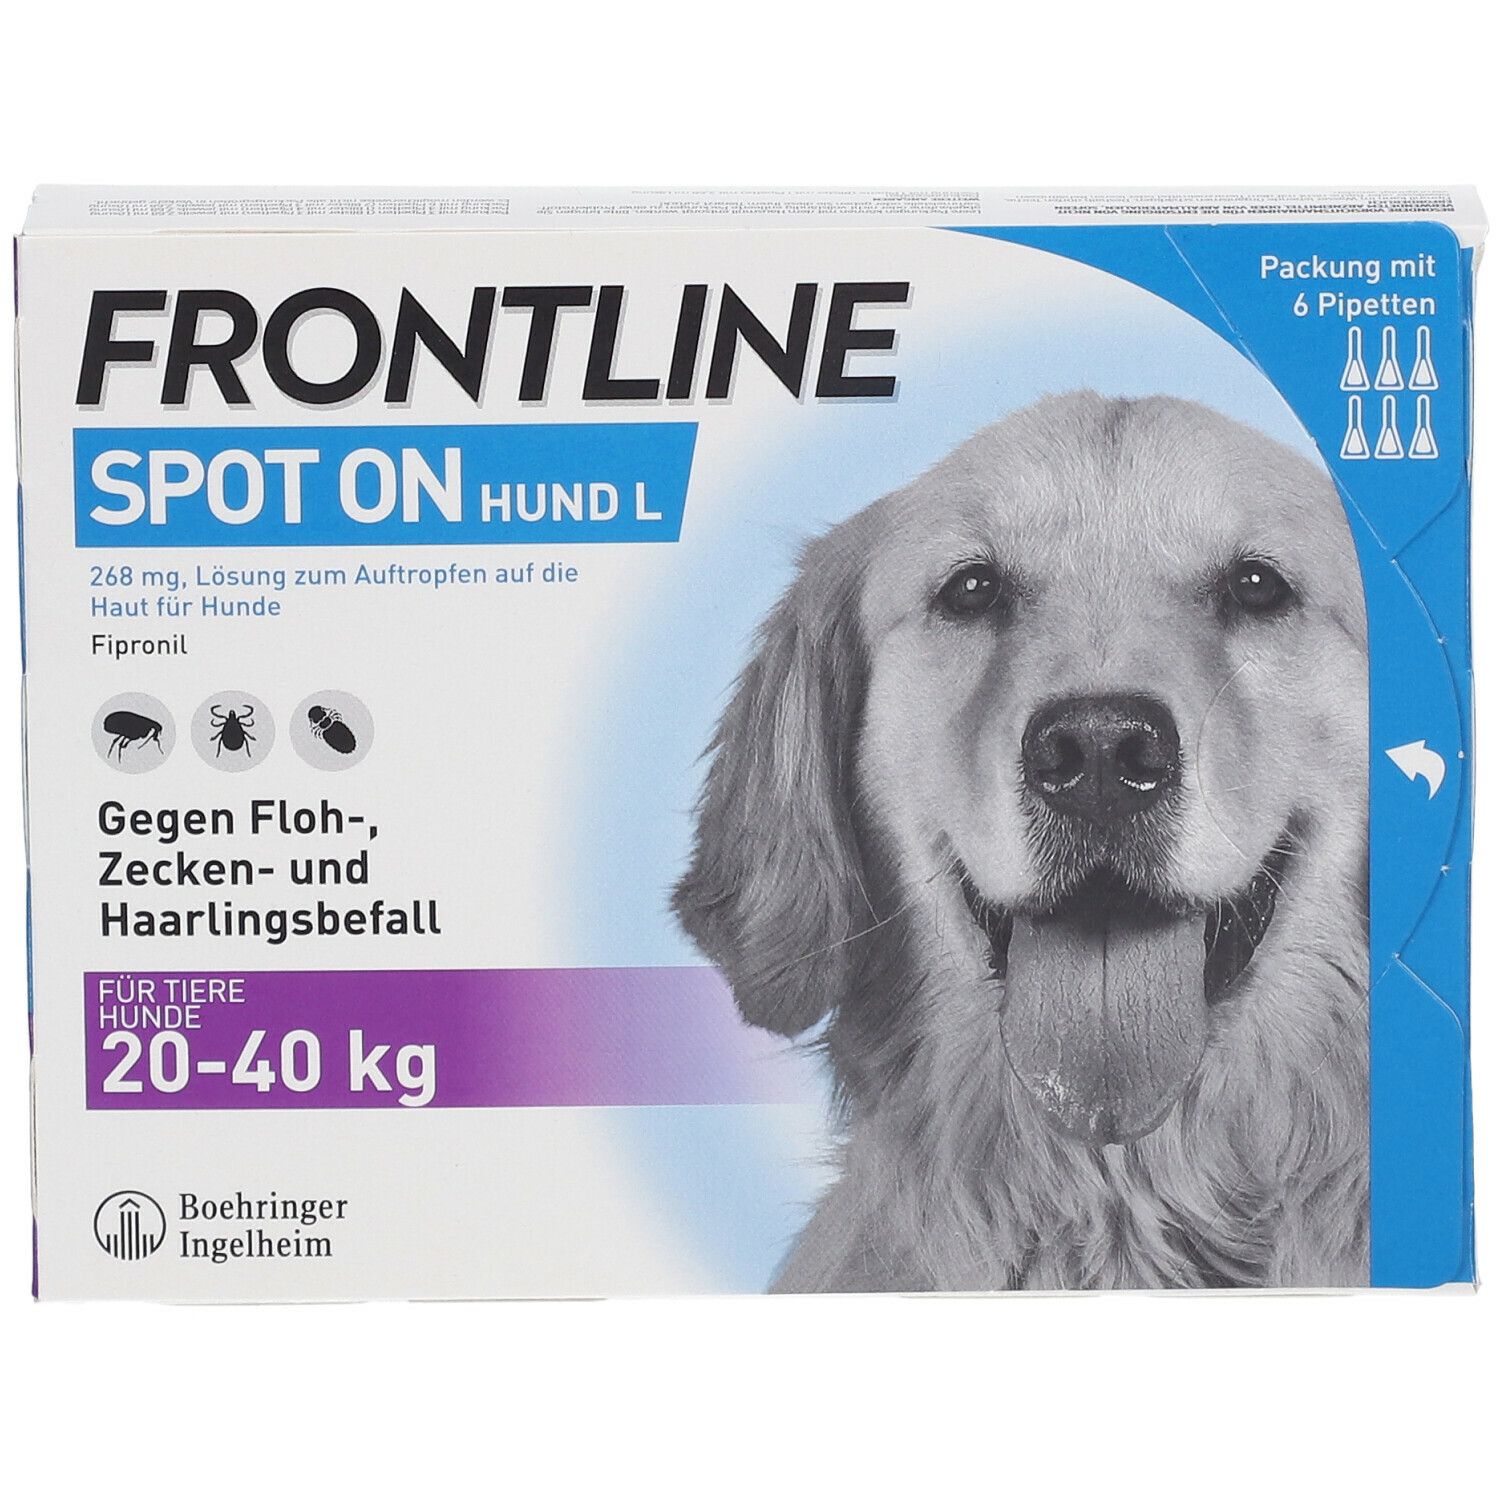 FRONTLINE Spot on gegen Zecken und Flöhe Hund L 20-40kg